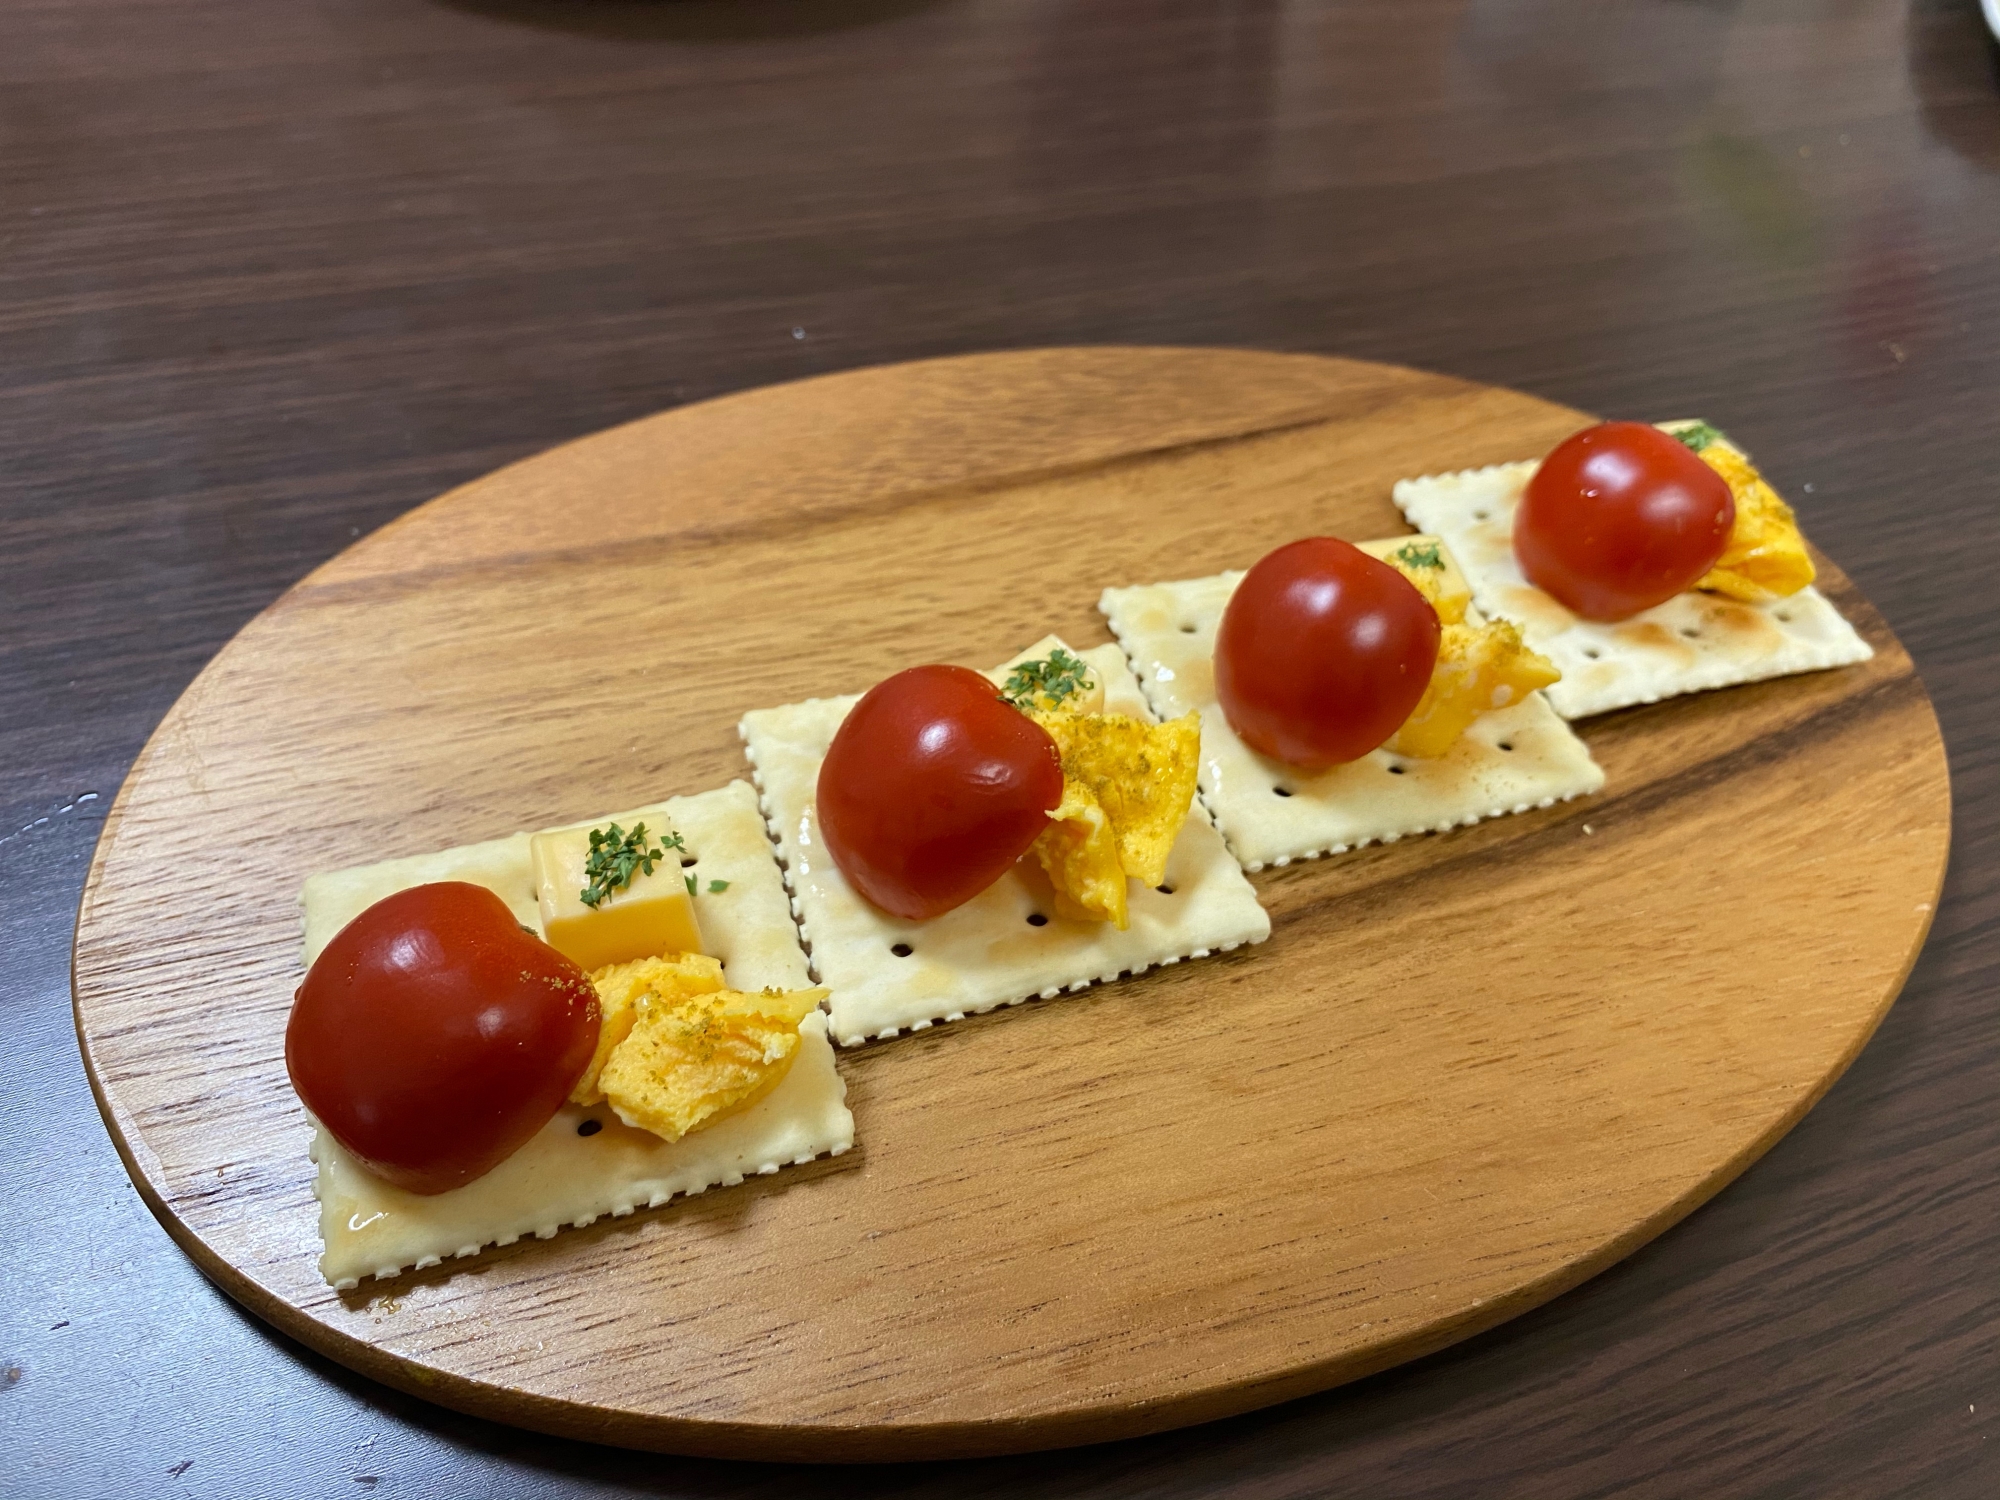 トマト&チーズのクミン風味カナッペ